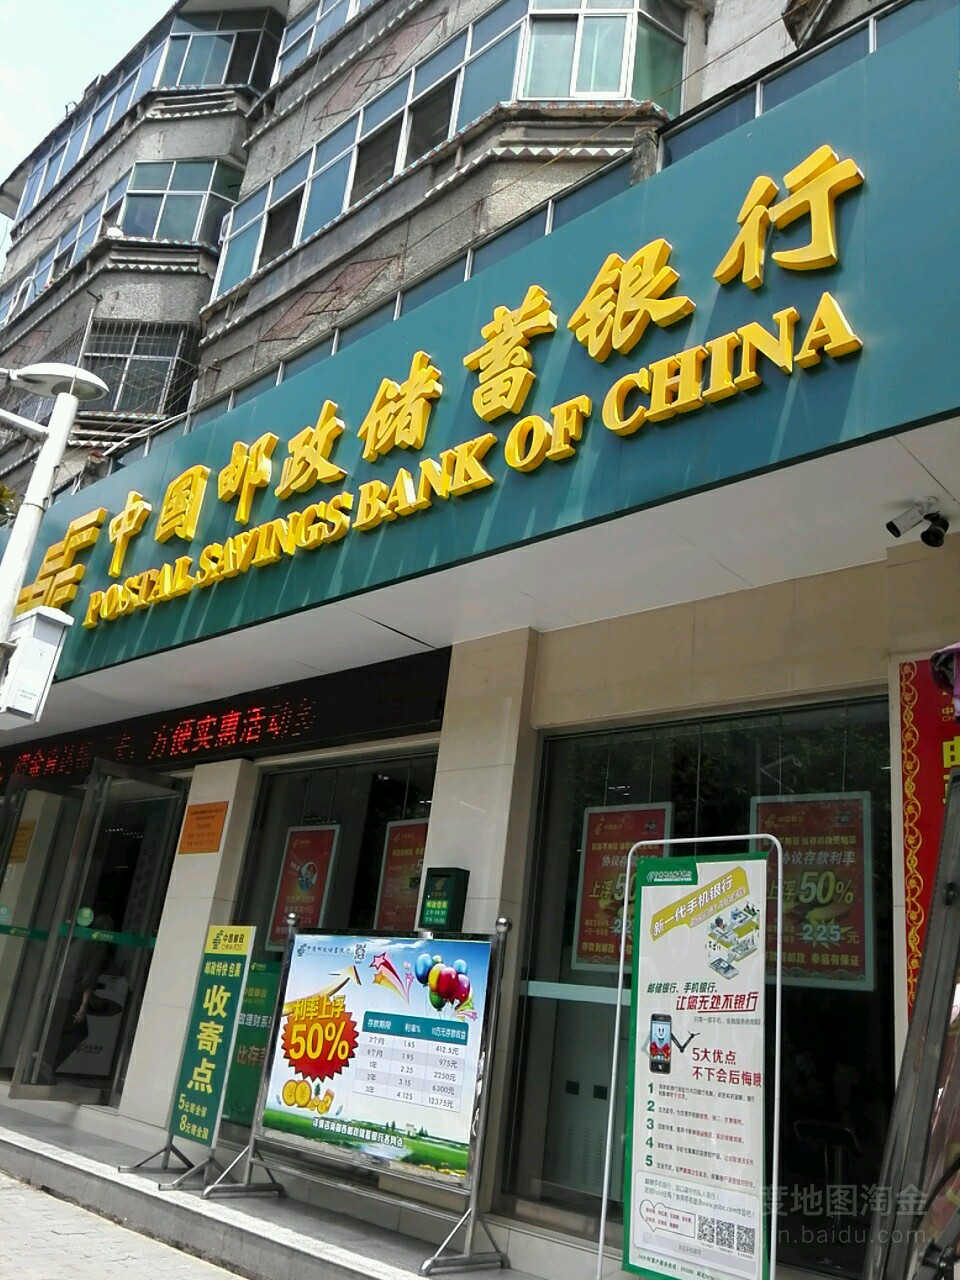 中国邮政储蓄银行(城西营业所)